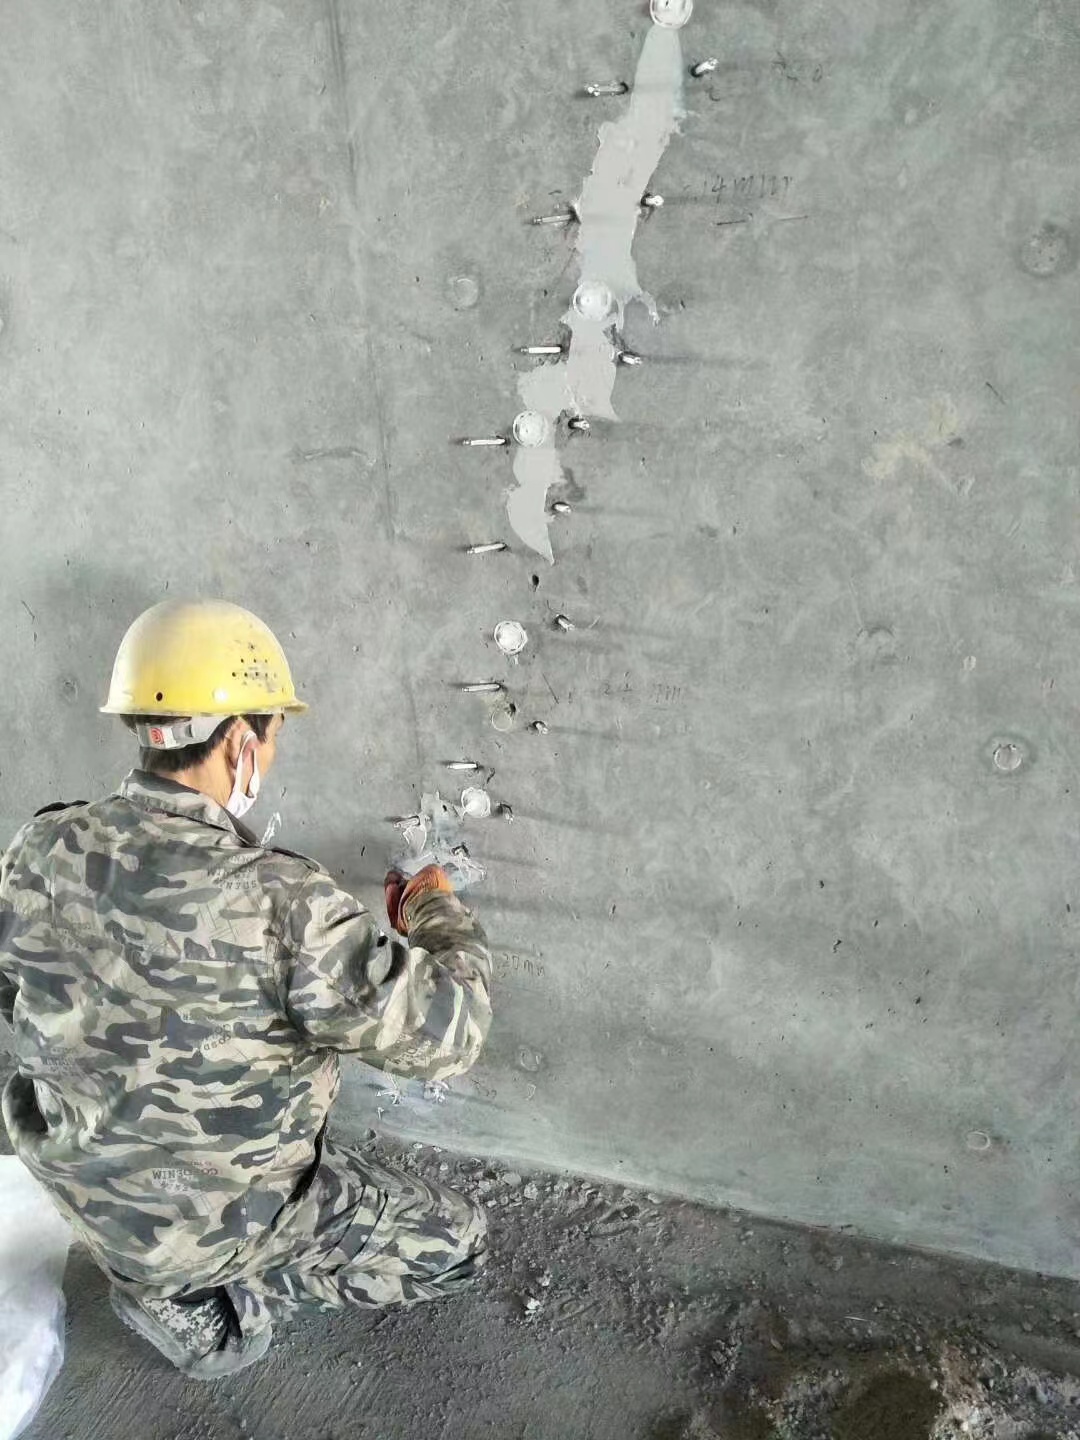 莆田混凝土楼板裂缝加固施工的方案